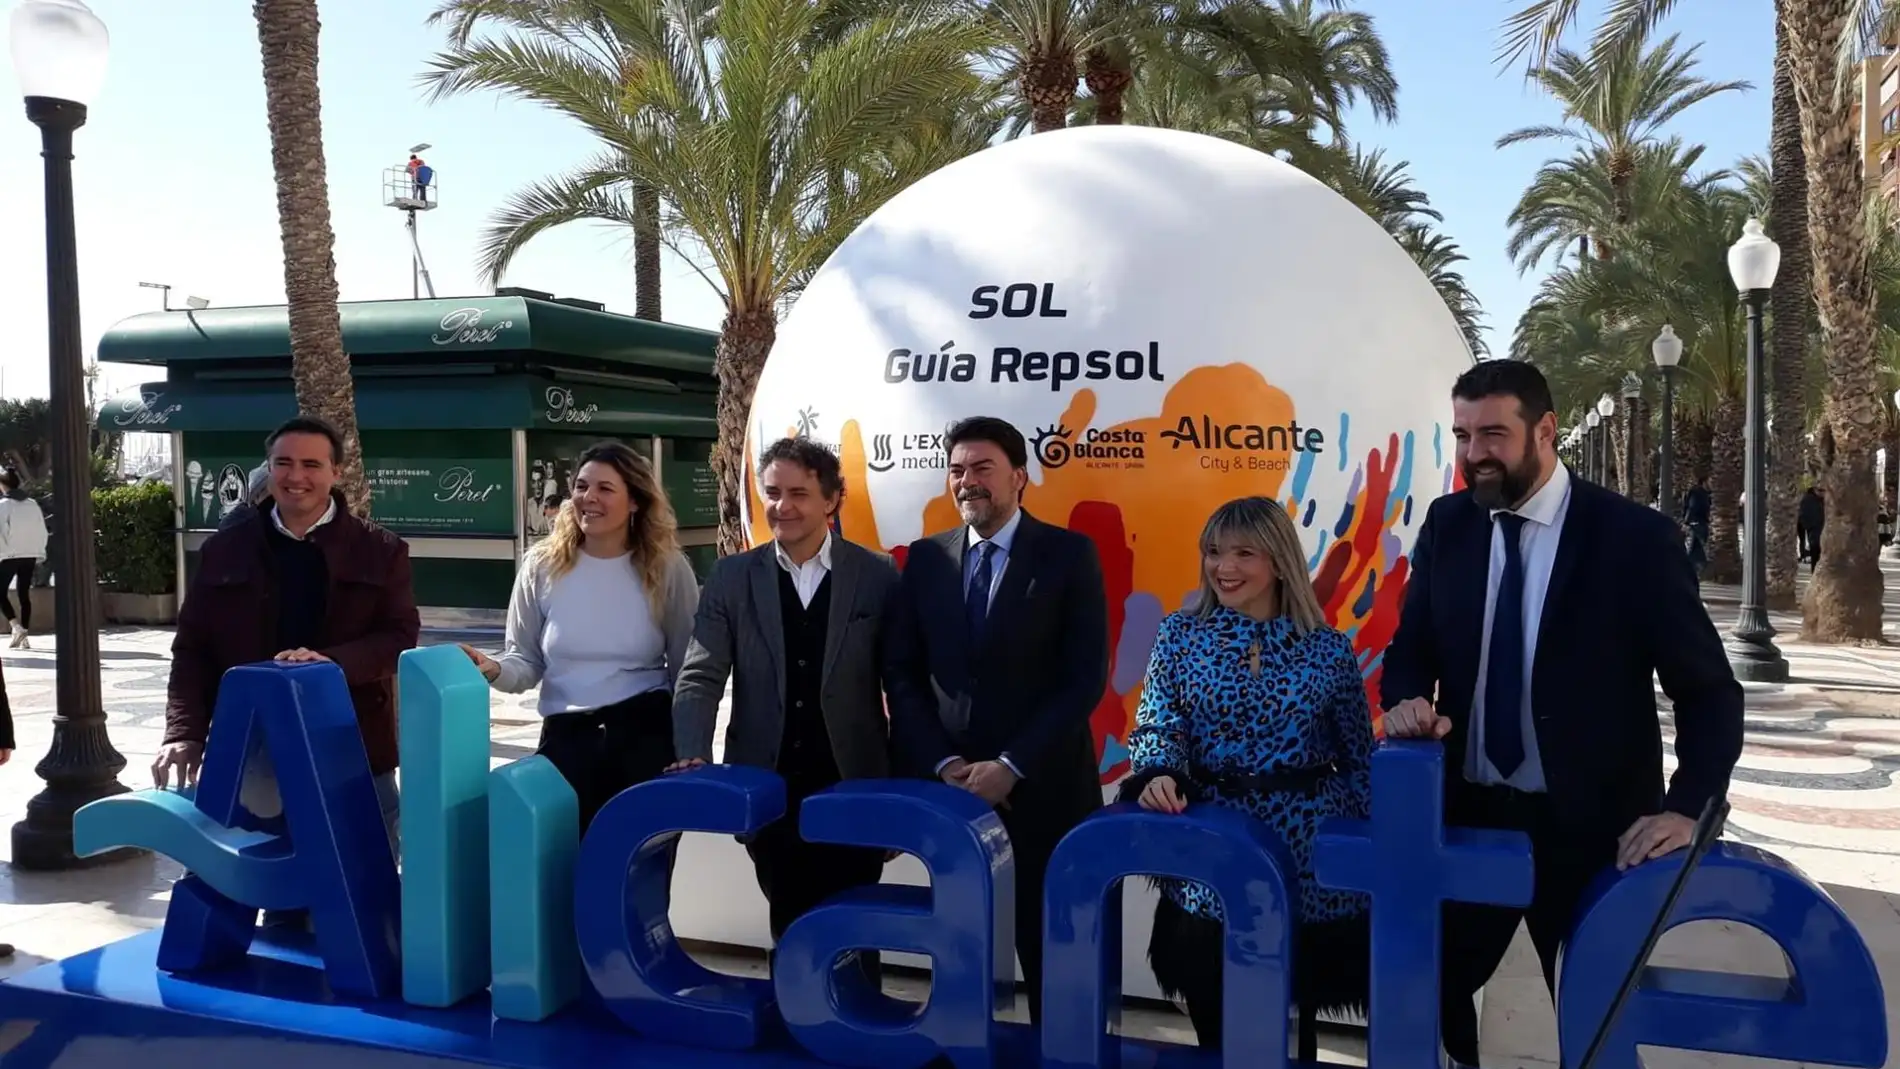 Los Soles Repsol abren boca en Alicante con showcookings, actividades en la calle y un arroz gigante